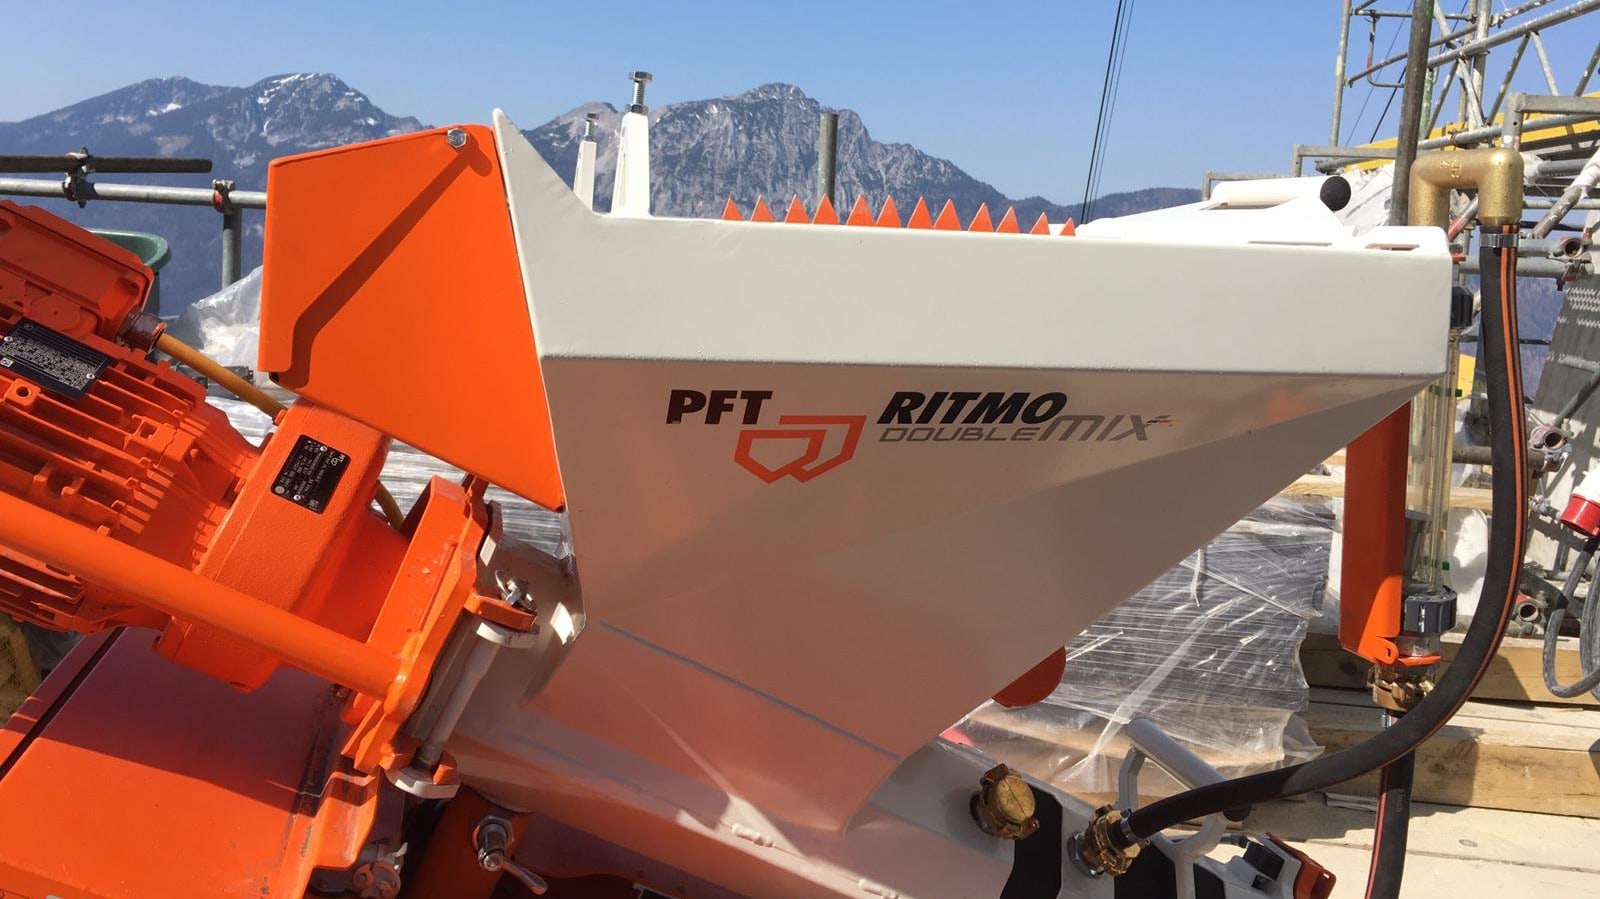 PFT RITMO double mix - Einsatz der Mischpumpe in luftiger Höhe